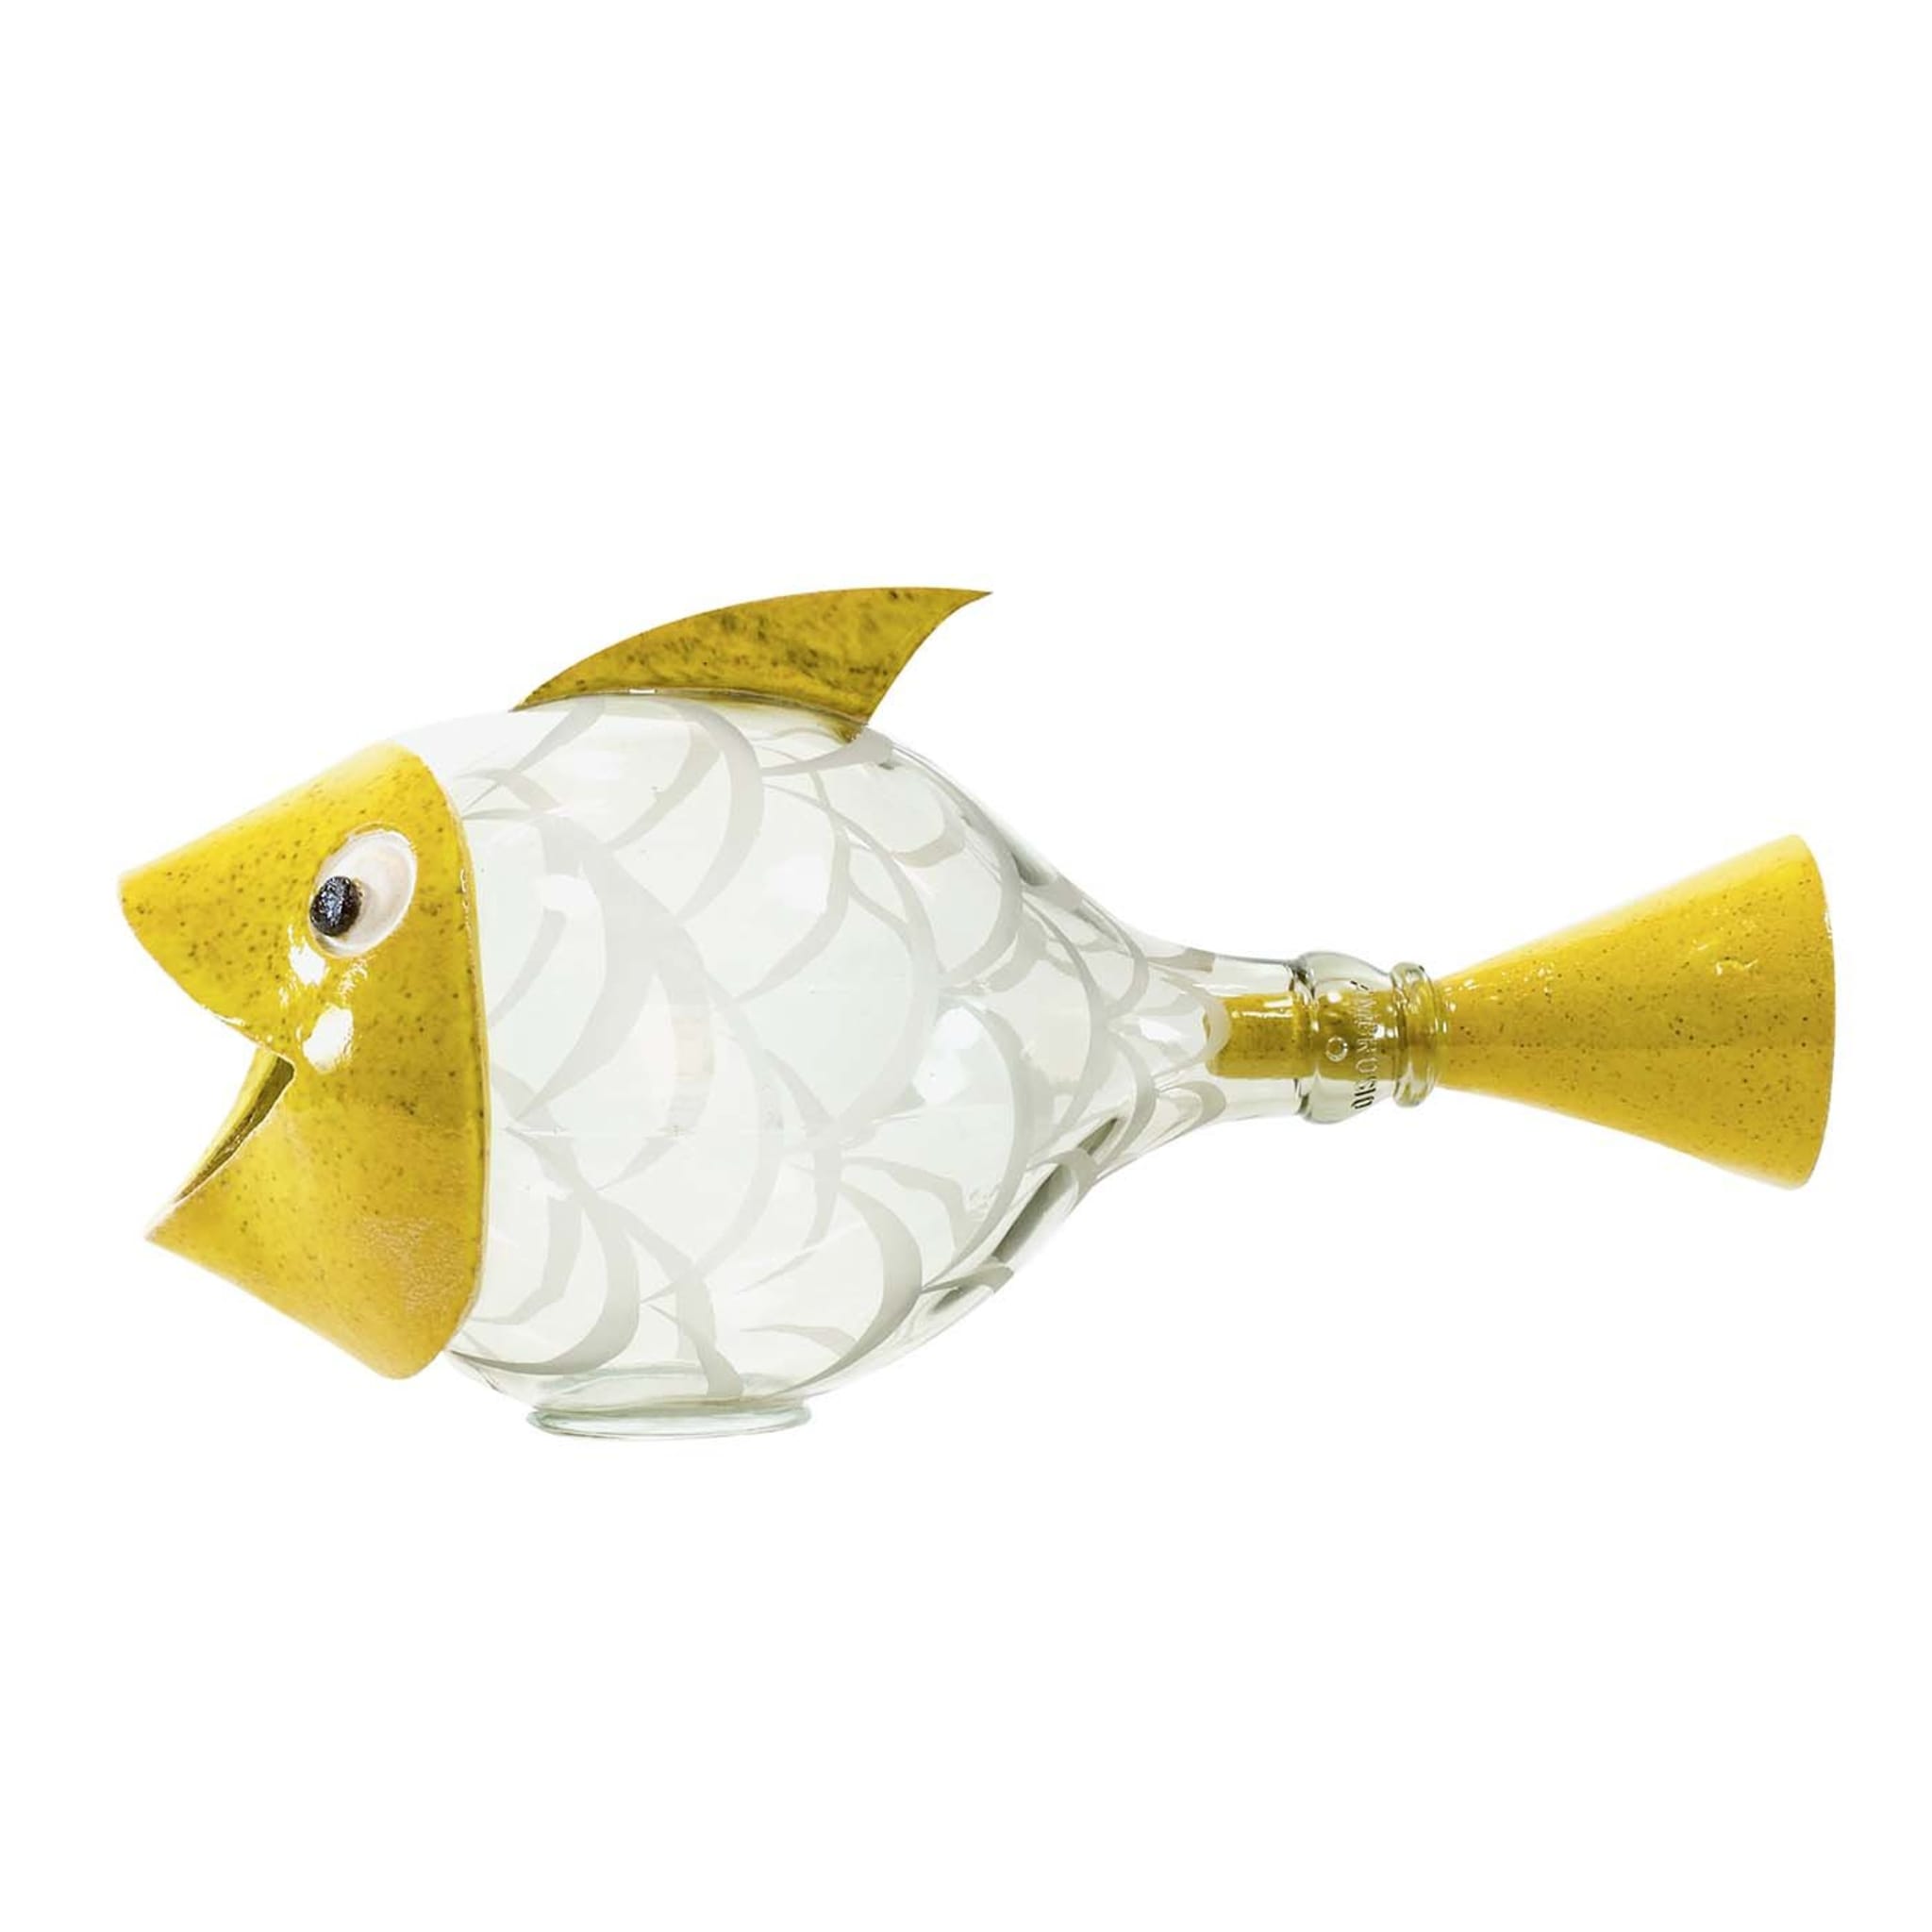 Escultura amarilla Pesce Palla #2 - Vista principal